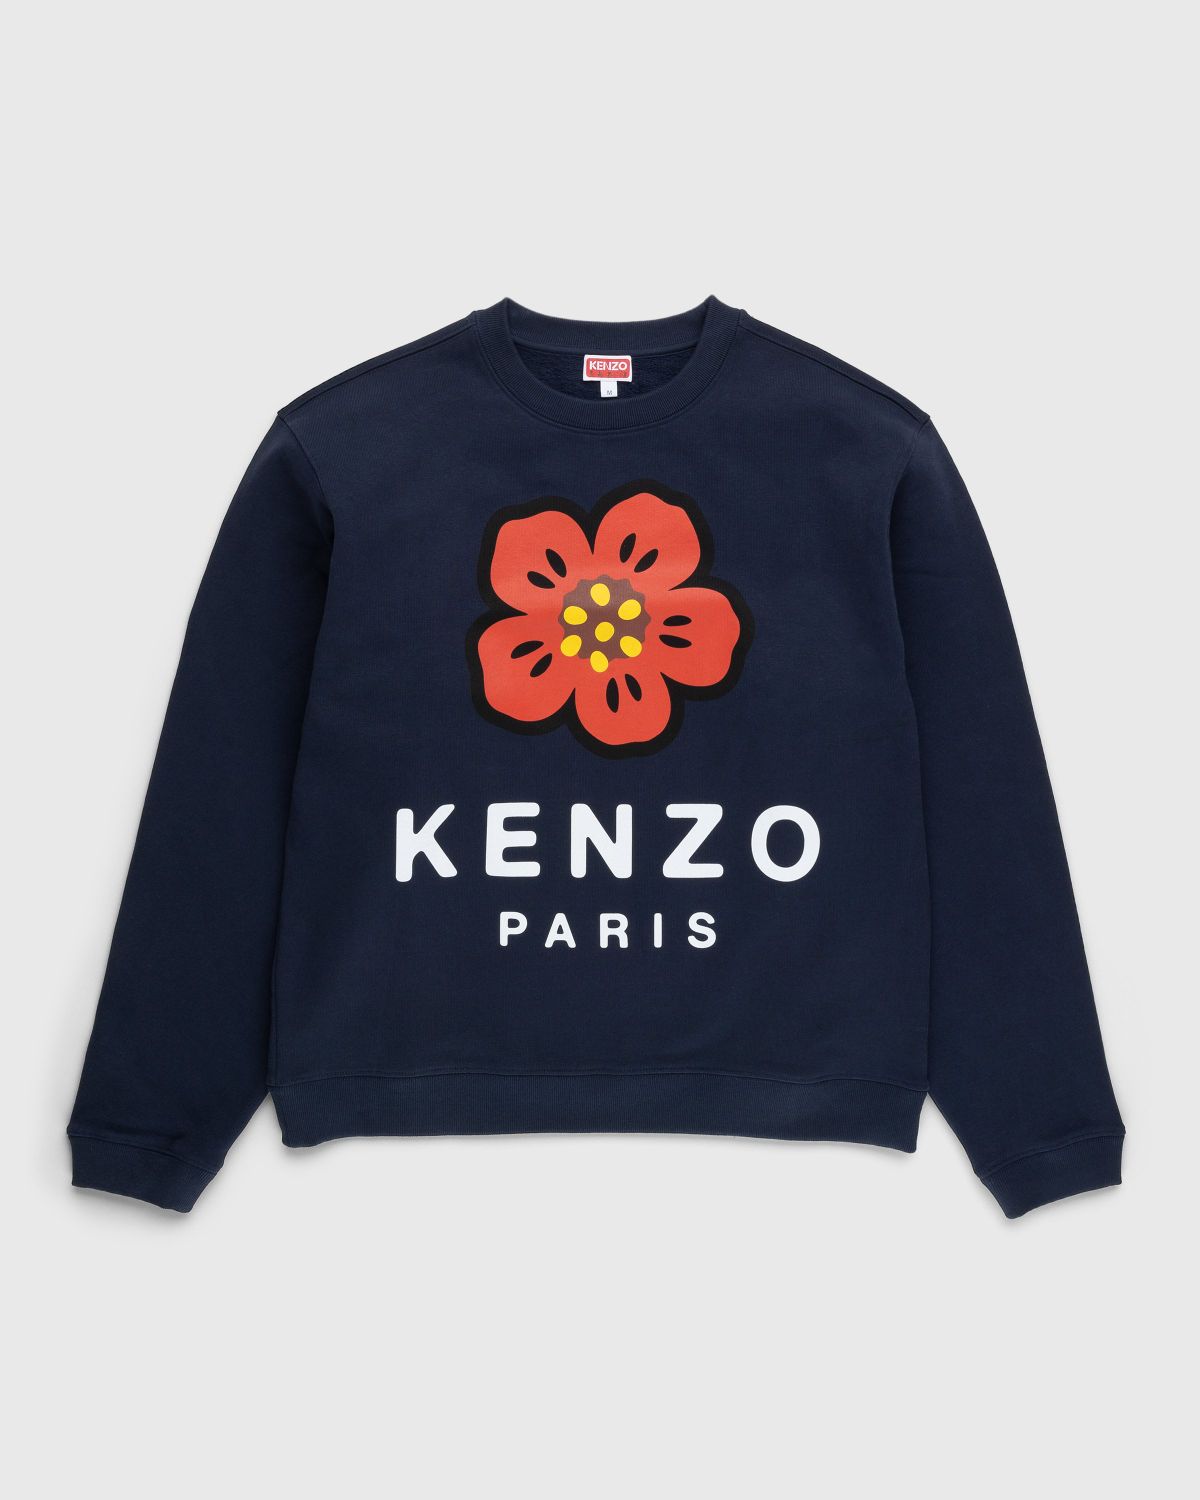 Kenzo x Nigo Varsity Sweatshirt Dark Khaki